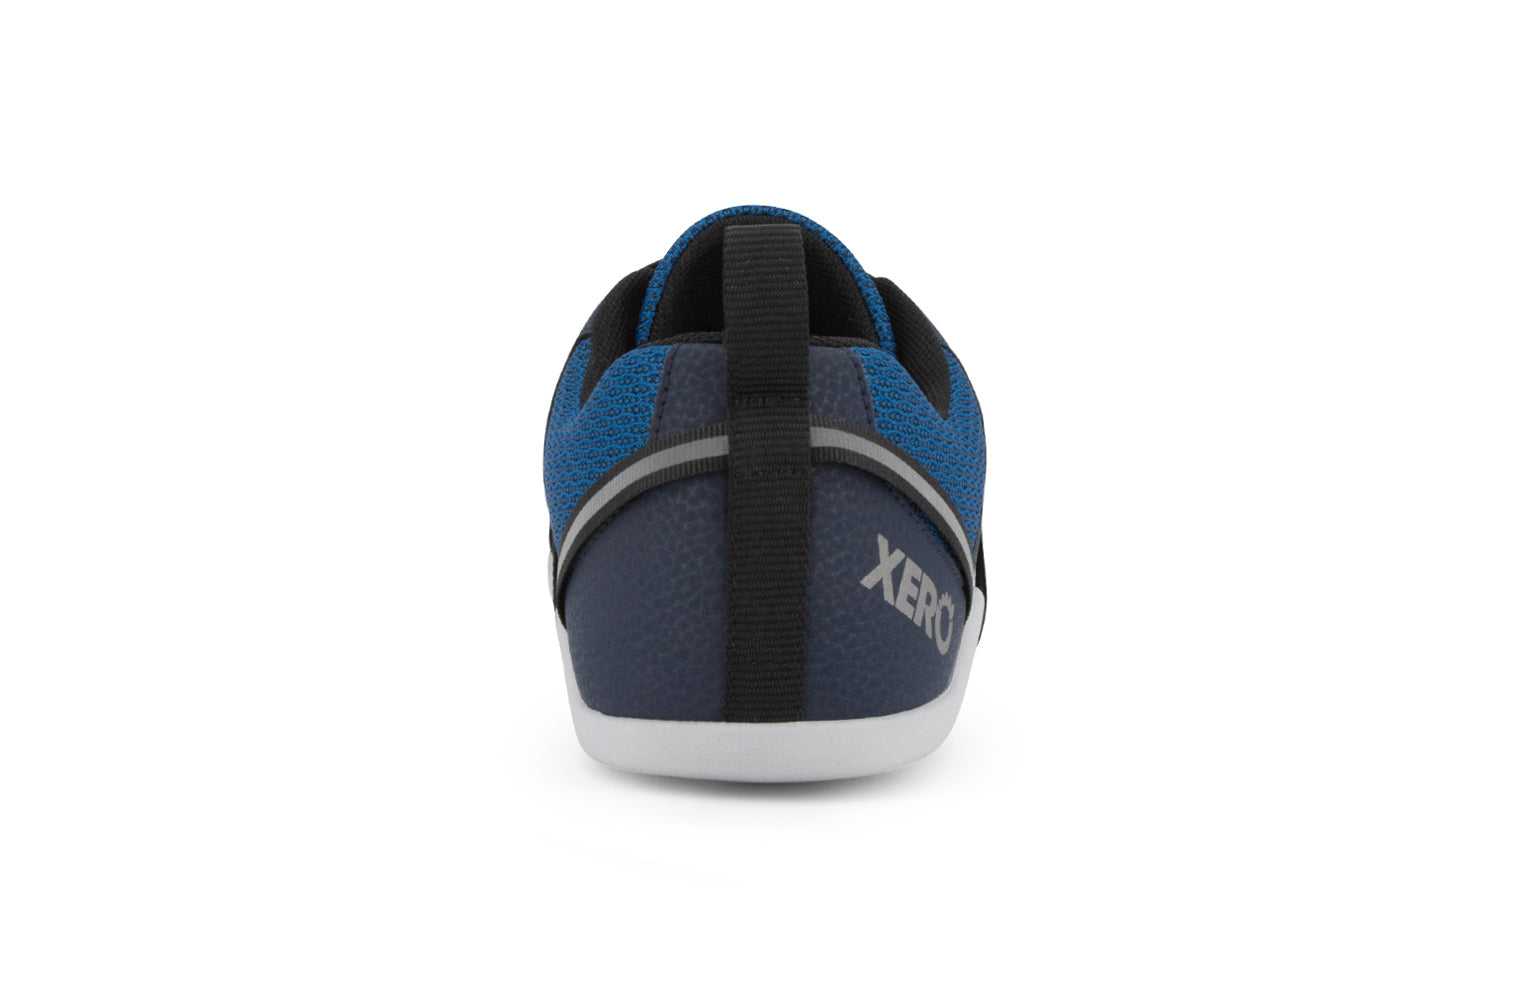 Xero Shoes Prio barfods løbesko/træningssko til mænd i farven mykonos blue, bagfra